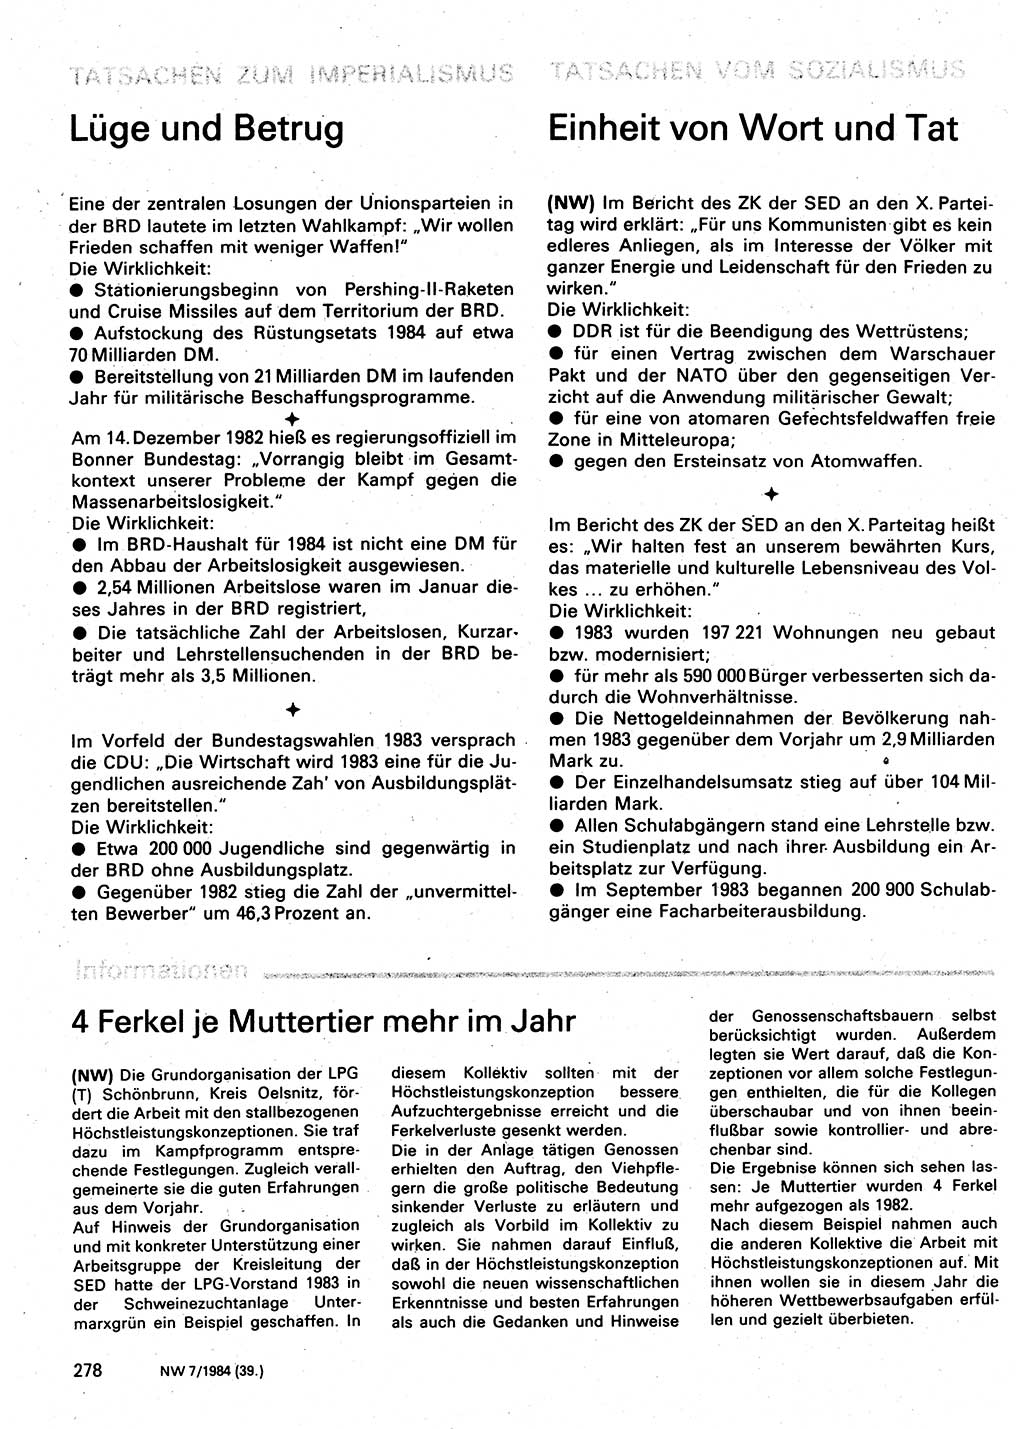 Neuer Weg (NW), Organ des Zentralkomitees (ZK) der SED (Sozialistische Einheitspartei Deutschlands) für Fragen des Parteilebens, 39. Jahrgang [Deutsche Demokratische Republik (DDR)] 1984, Seite 278 (NW ZK SED DDR 1984, S. 278)